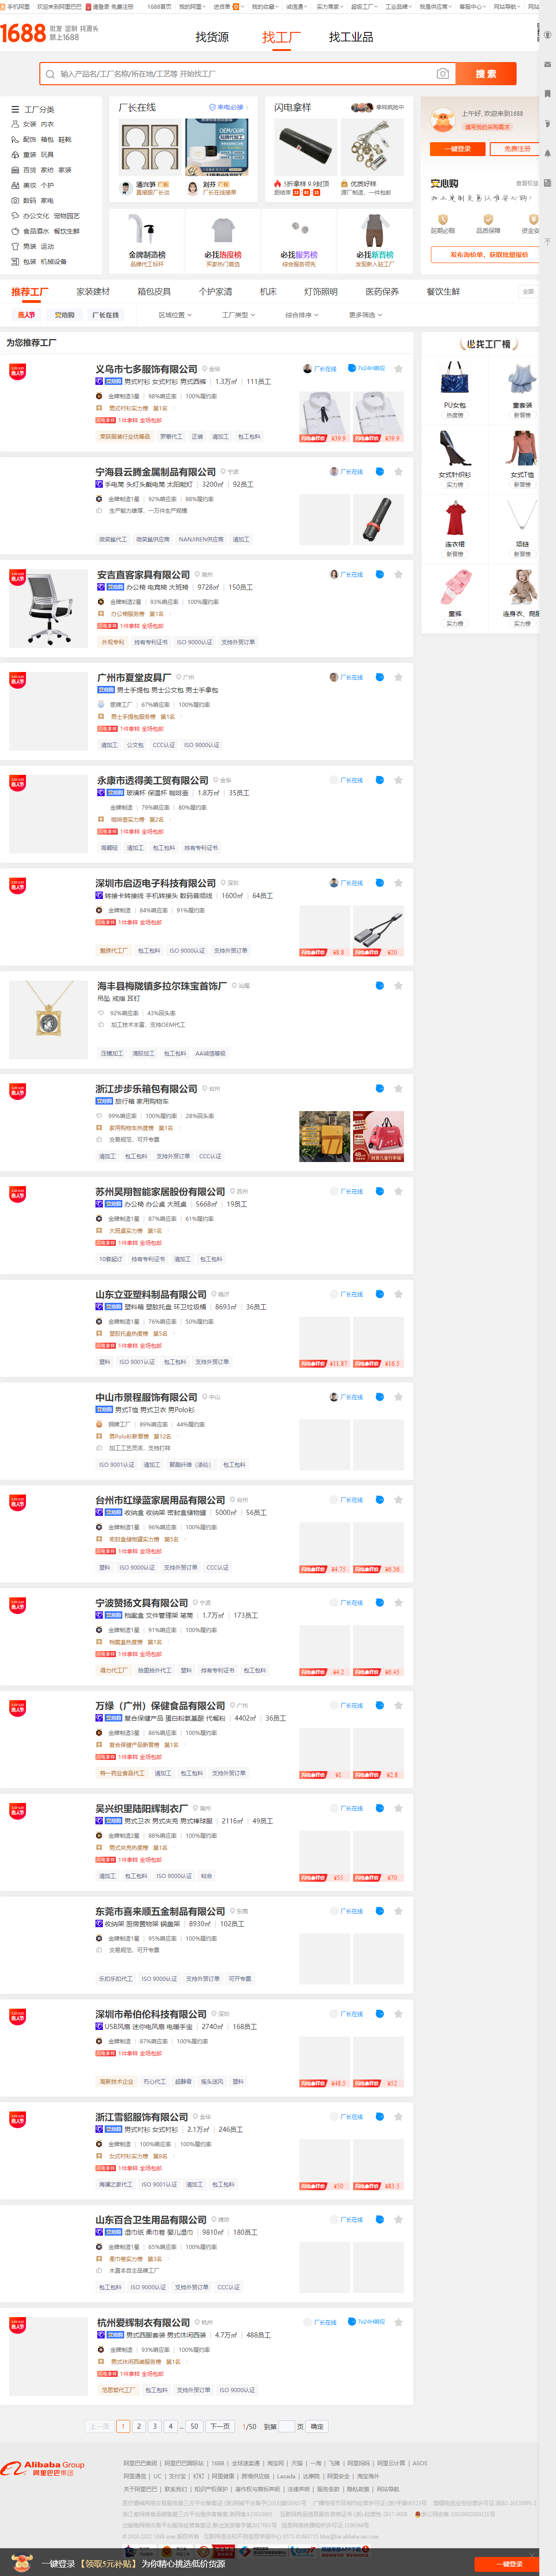 惠州市恒源建材有限公司网站案例